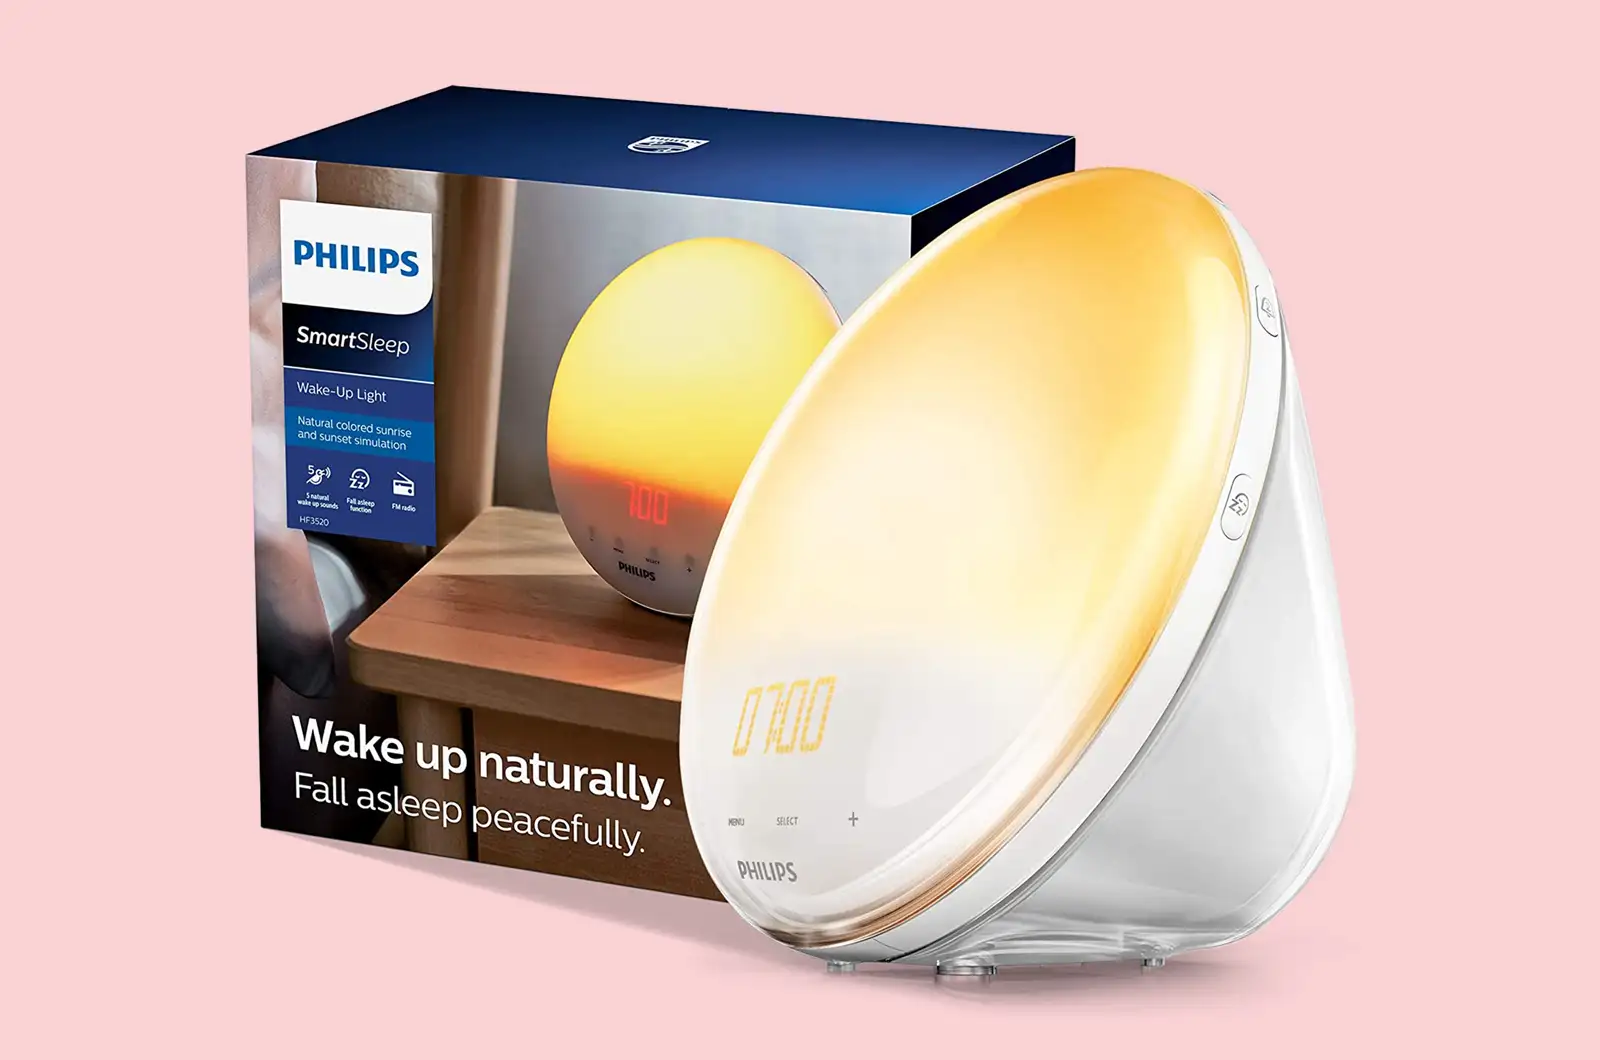 Philips SmartSleep Wake up Light